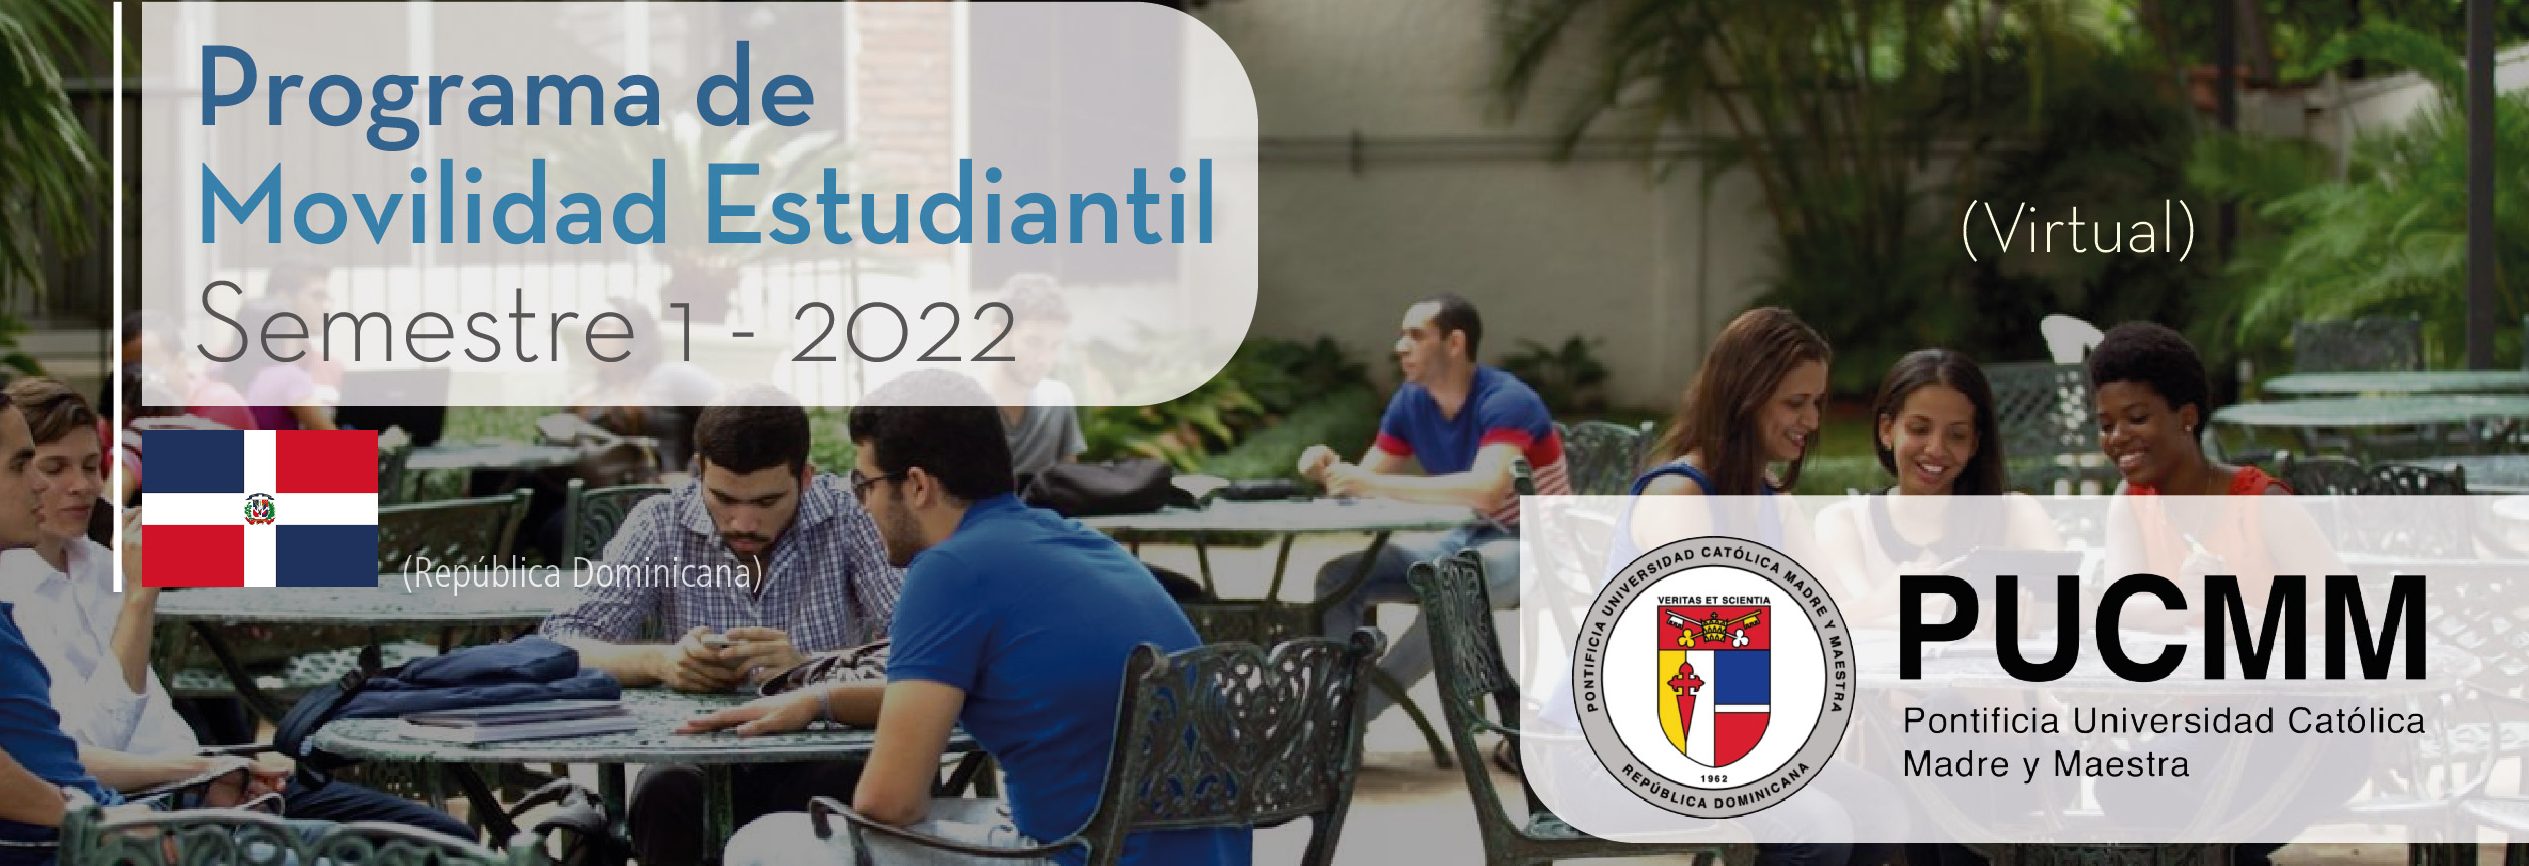 La Pontificia Universidad Católica Madre y Maestra de República Dominicana es parte del Programa de Movilidad Virtual Estudiantil UCB por el Mundo.